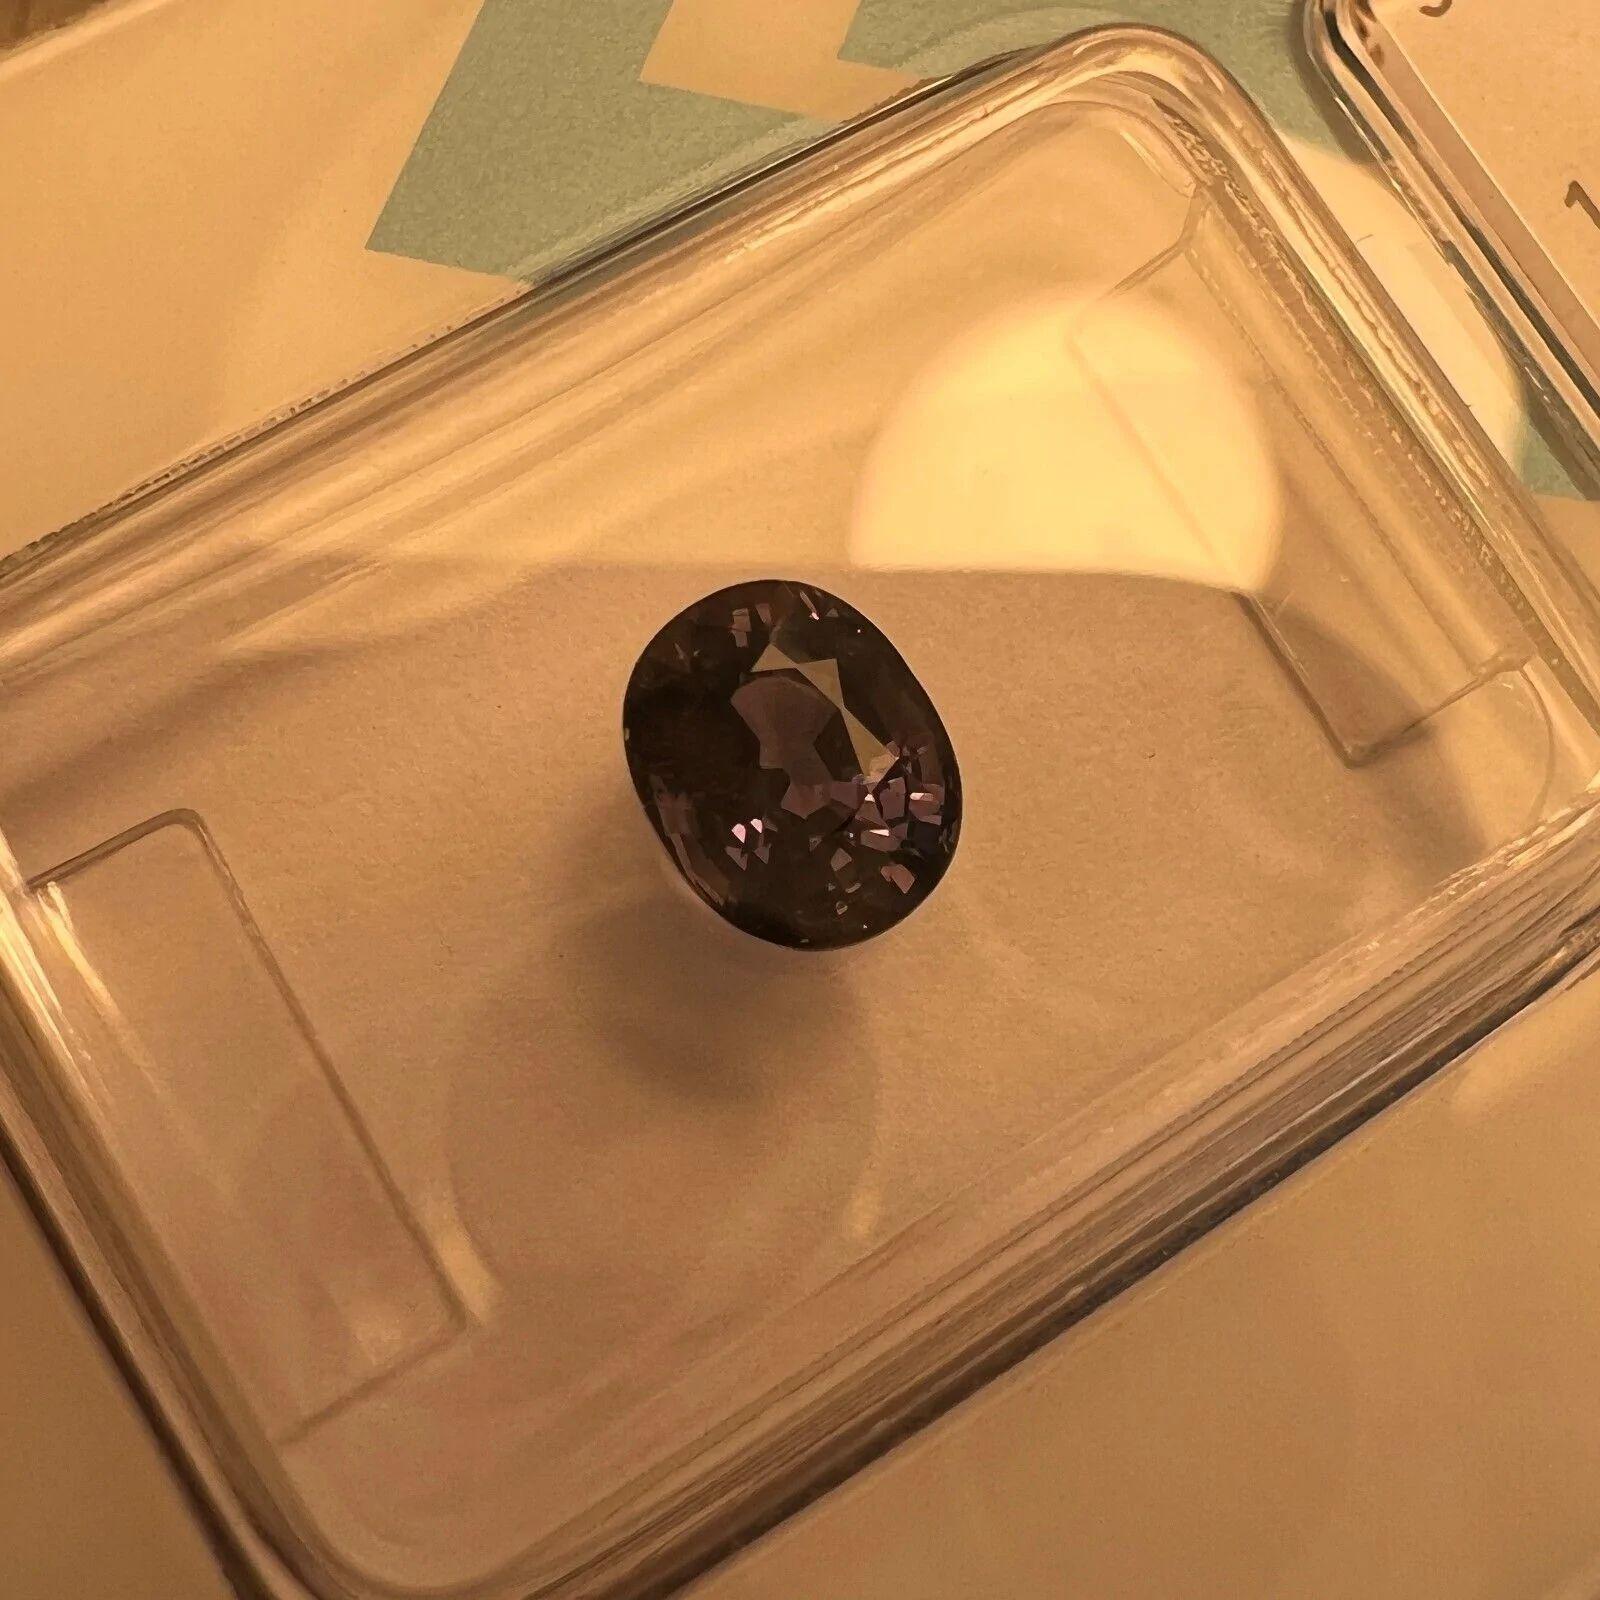 1.08ct Saphir à couleur variable non chauffé vert bleu violet certifié IGI taille ovale

Rare pierre précieuse saphir à changement de couleur non traité.
Saphir non chauffé de 1,08 carat avec un effet de changement de couleur rare. La couleur change